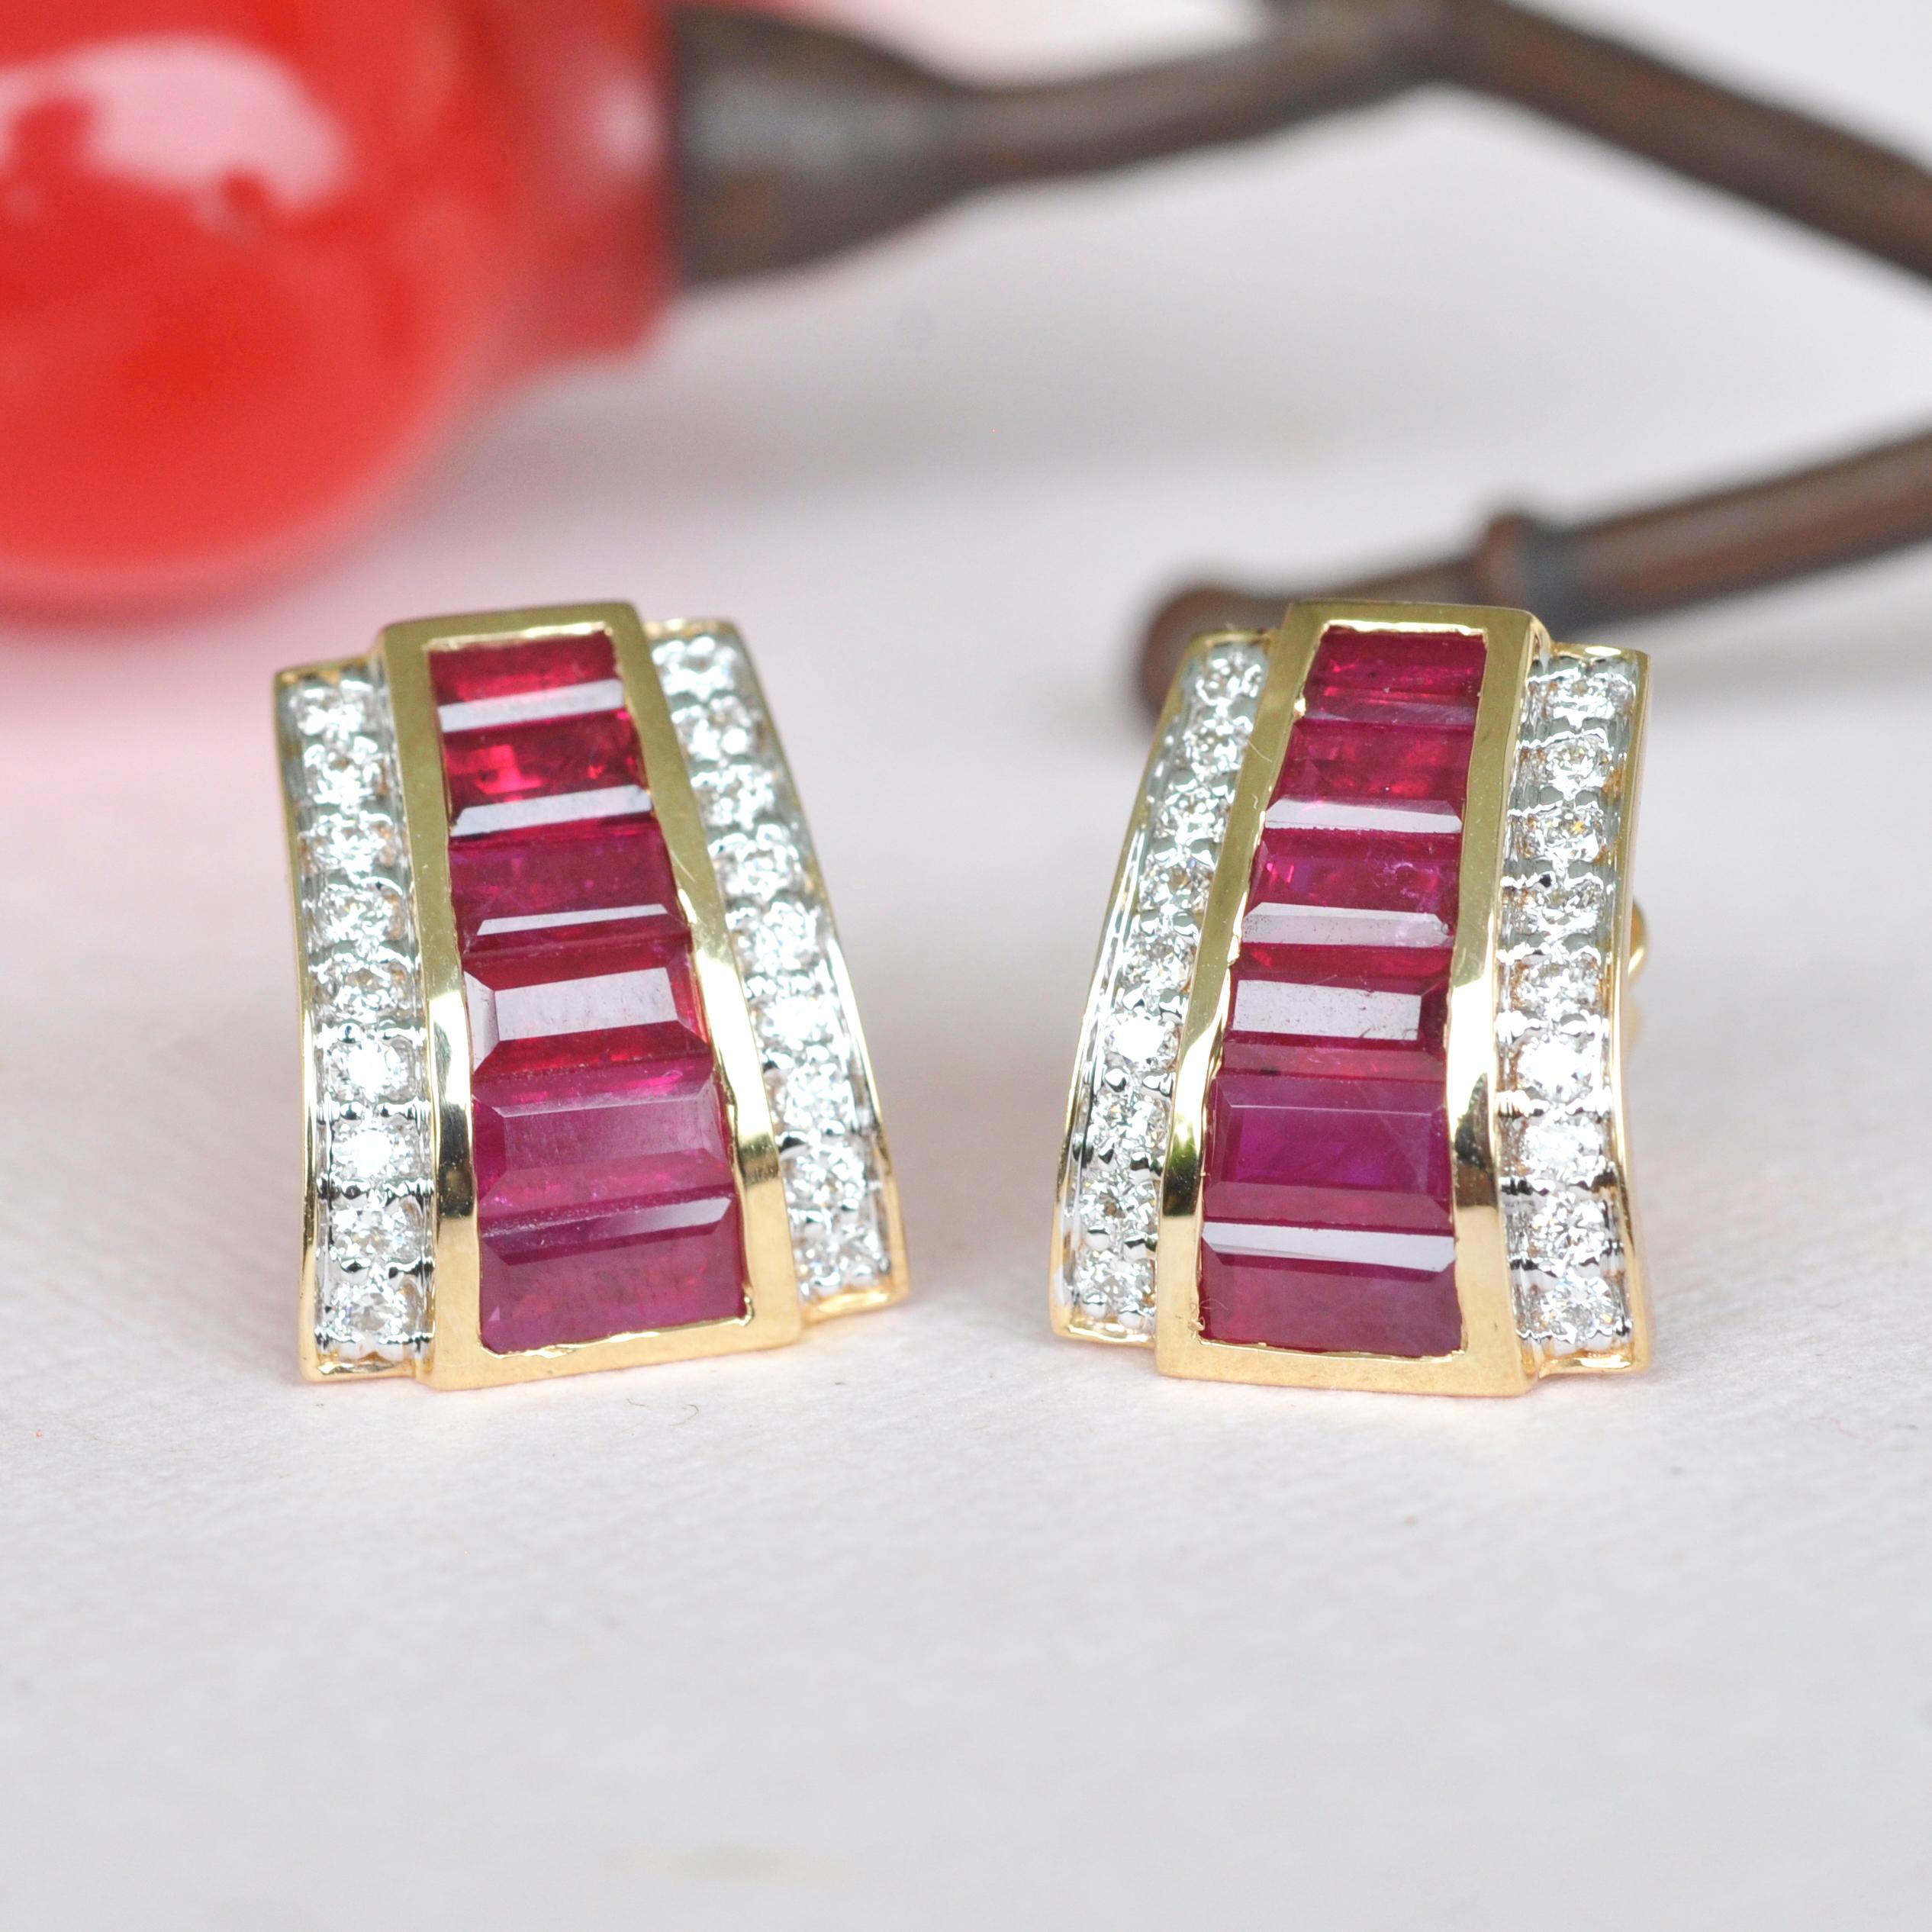 18 Karat Gold Art Deco Style Channel Set Ruby Baguette Diamond Stud Earrings For Sale 2